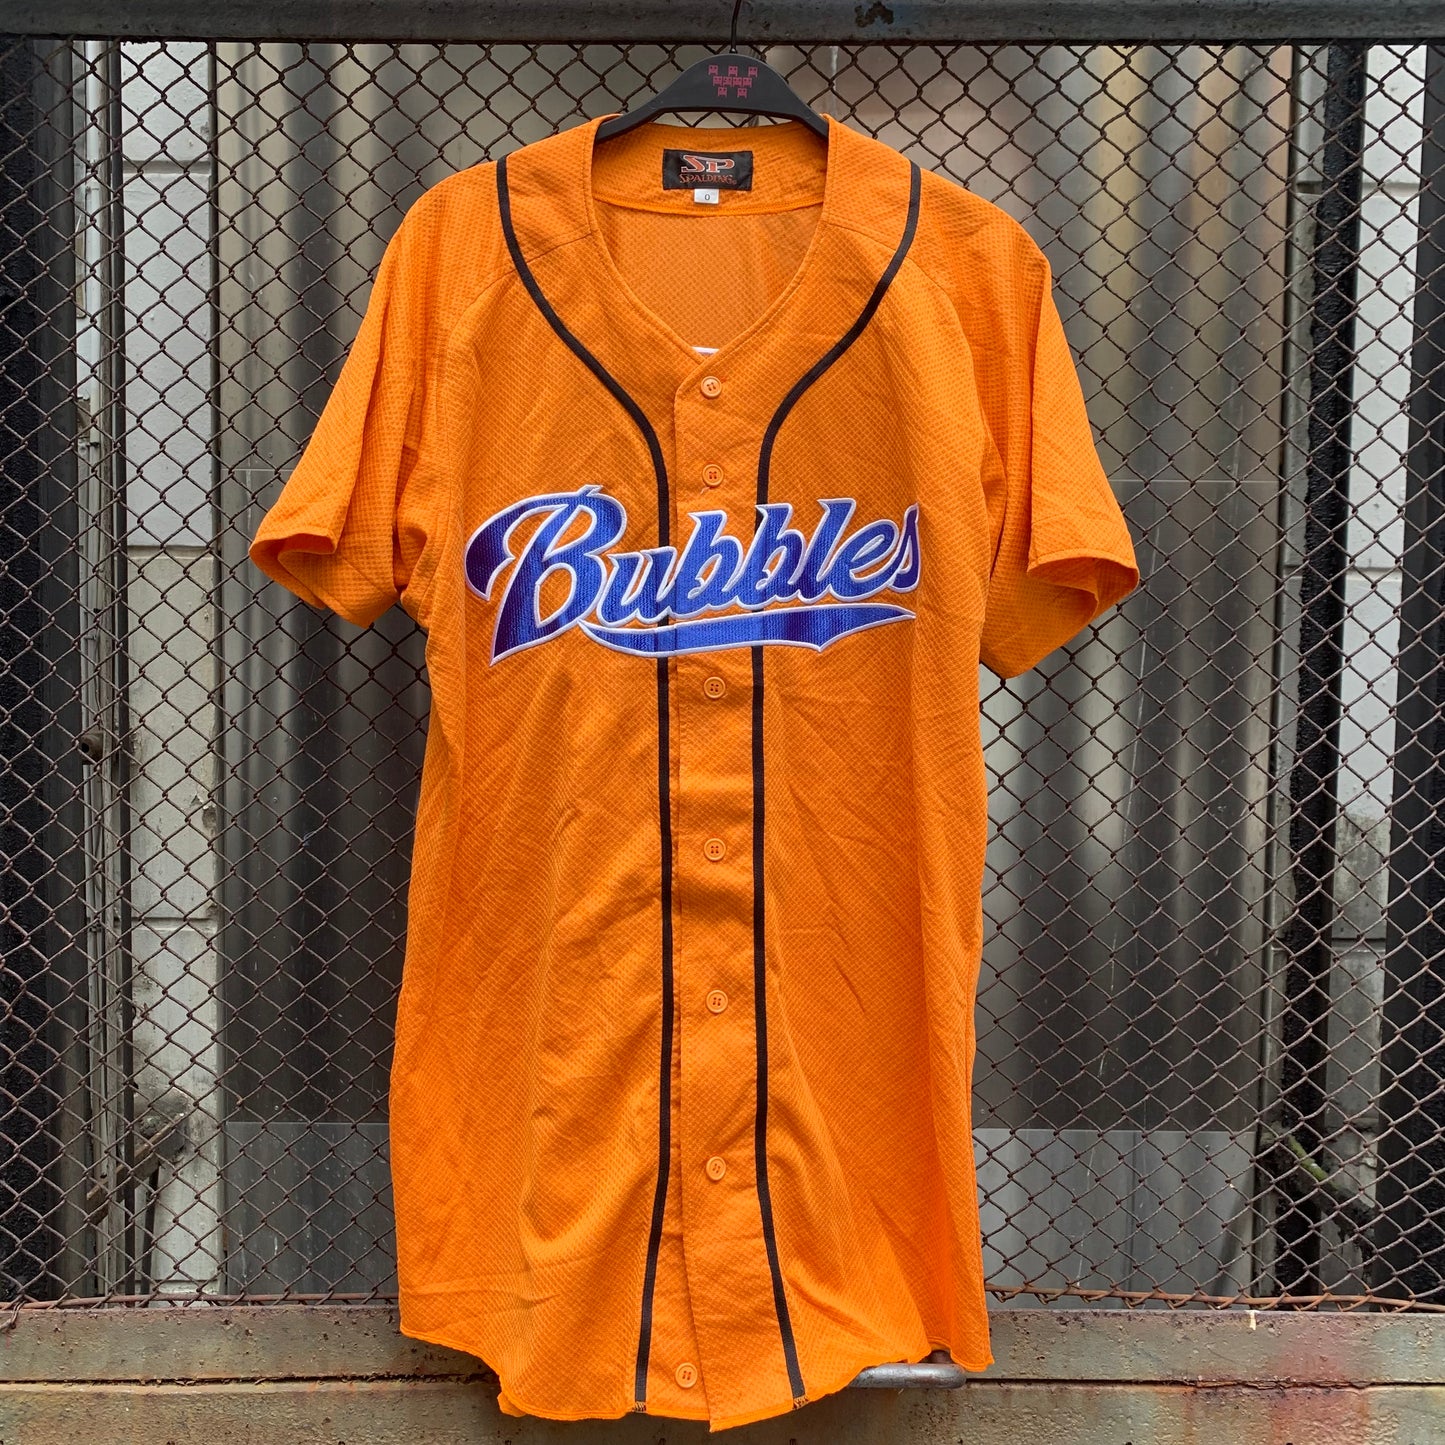 Japanese Baseball Shirt - Bubbles, 2